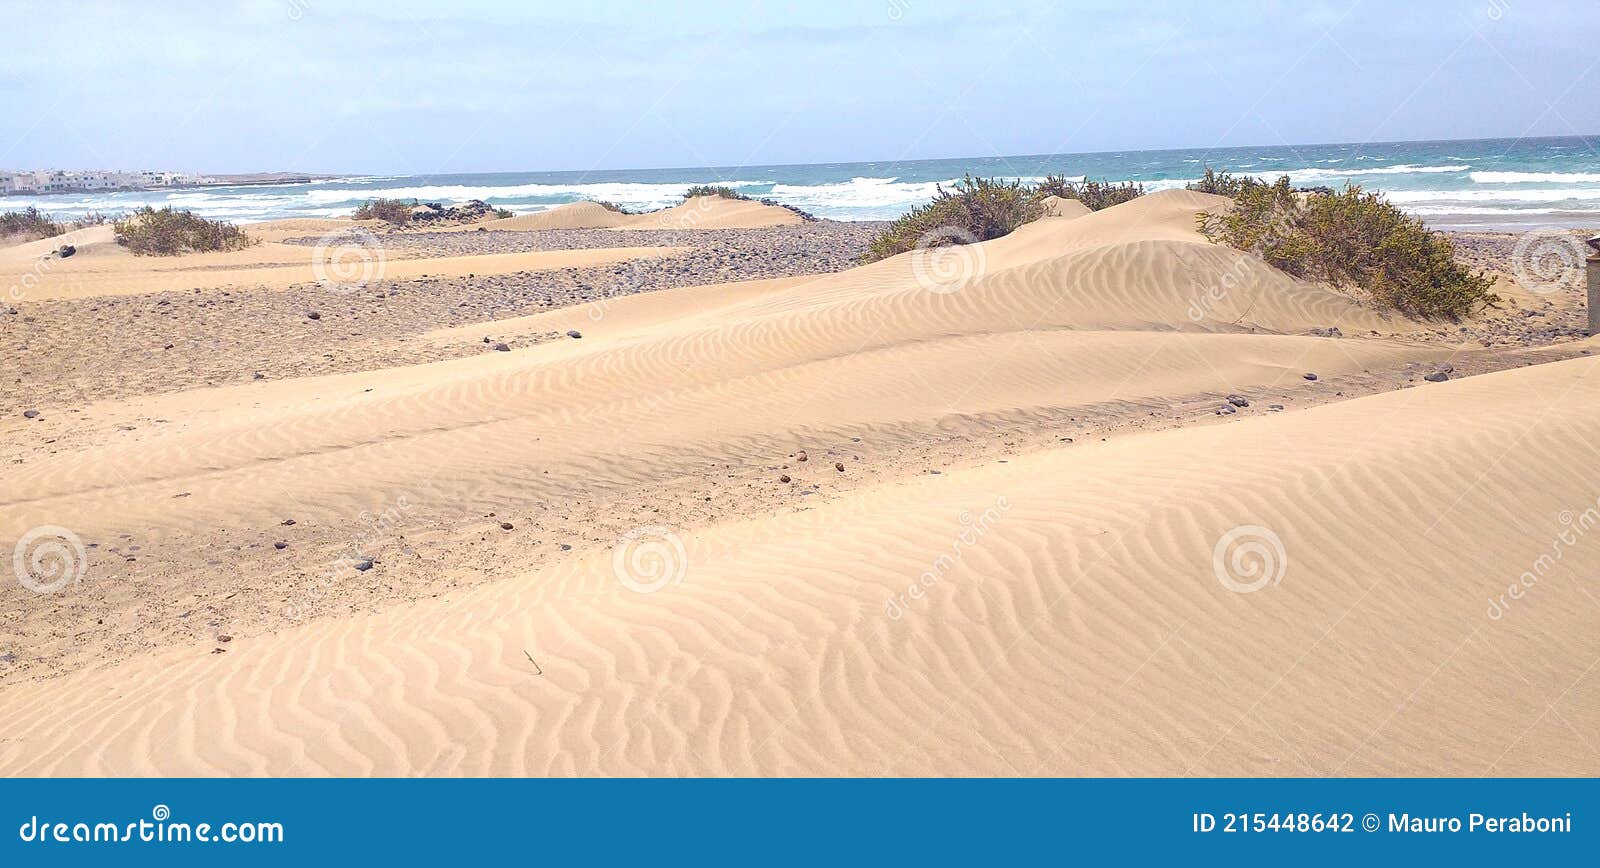 dune di sabbia desertica in spiaggia